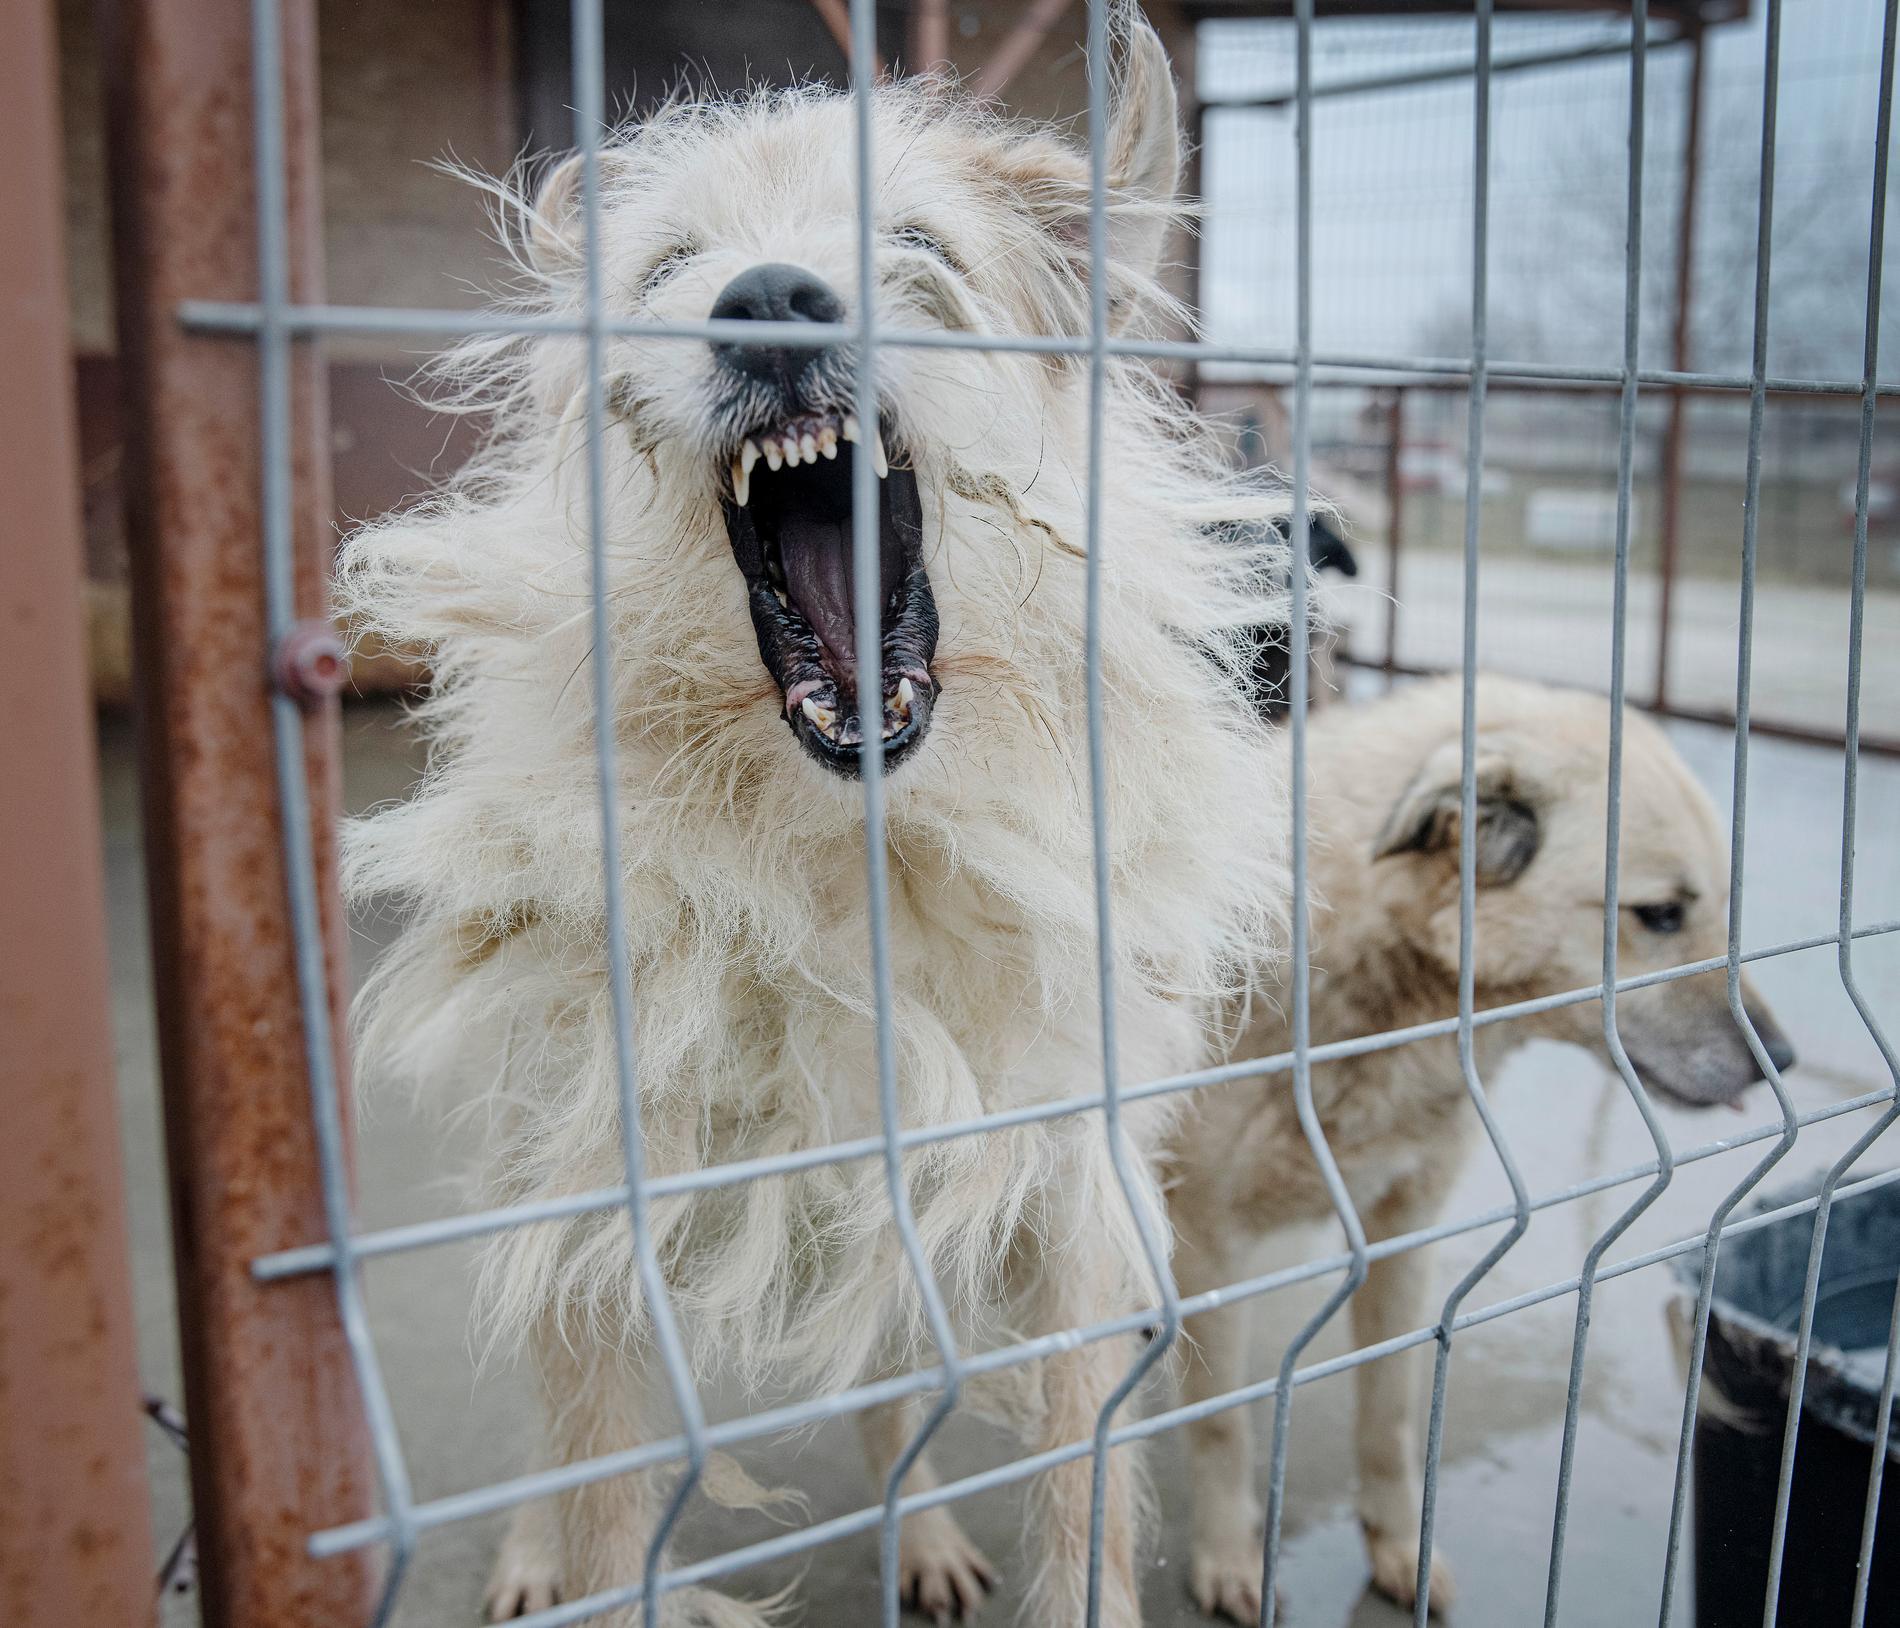  Hundratals hemlösa hundar på en gård utanför Bukarest i Rumänien. Under pandemin sågs en uppgång av antalet hundar som lämnades på gatan. Många av dem hade bott på restauranger och liknande som tvingats stänga på grund av pandemin. Flera organisationer arbetar hårt för att rädda hundarna och få dem adopterade till andra länder.